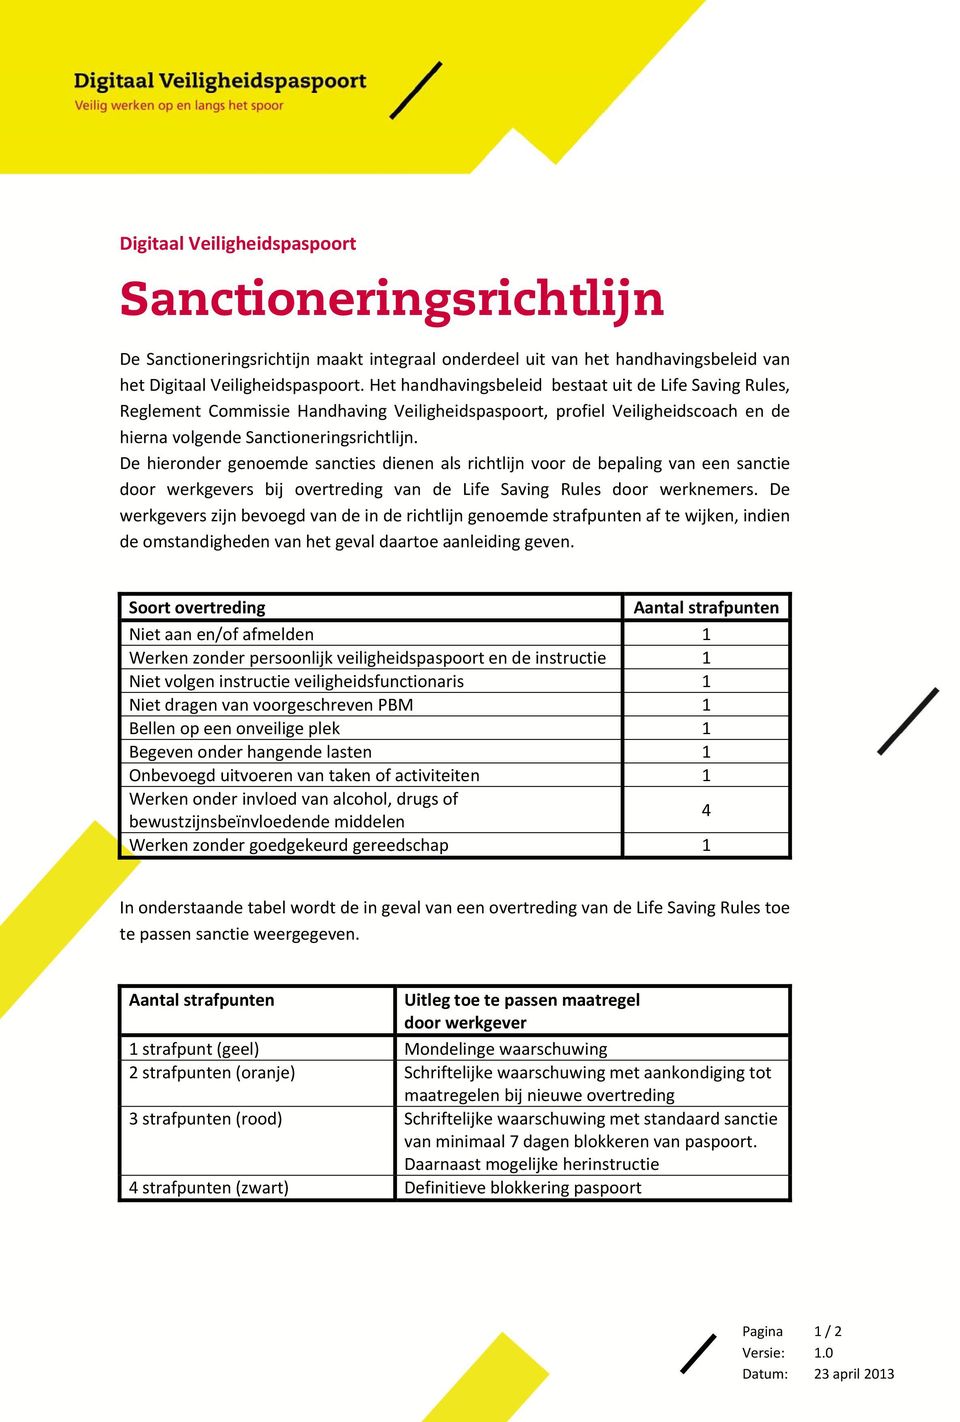 De hieronder genoemde sancties dienen als richtlijn voor de bepaling van een sanctie door werkgevers bij overtreding van de Life Saving Rules door werknemers.